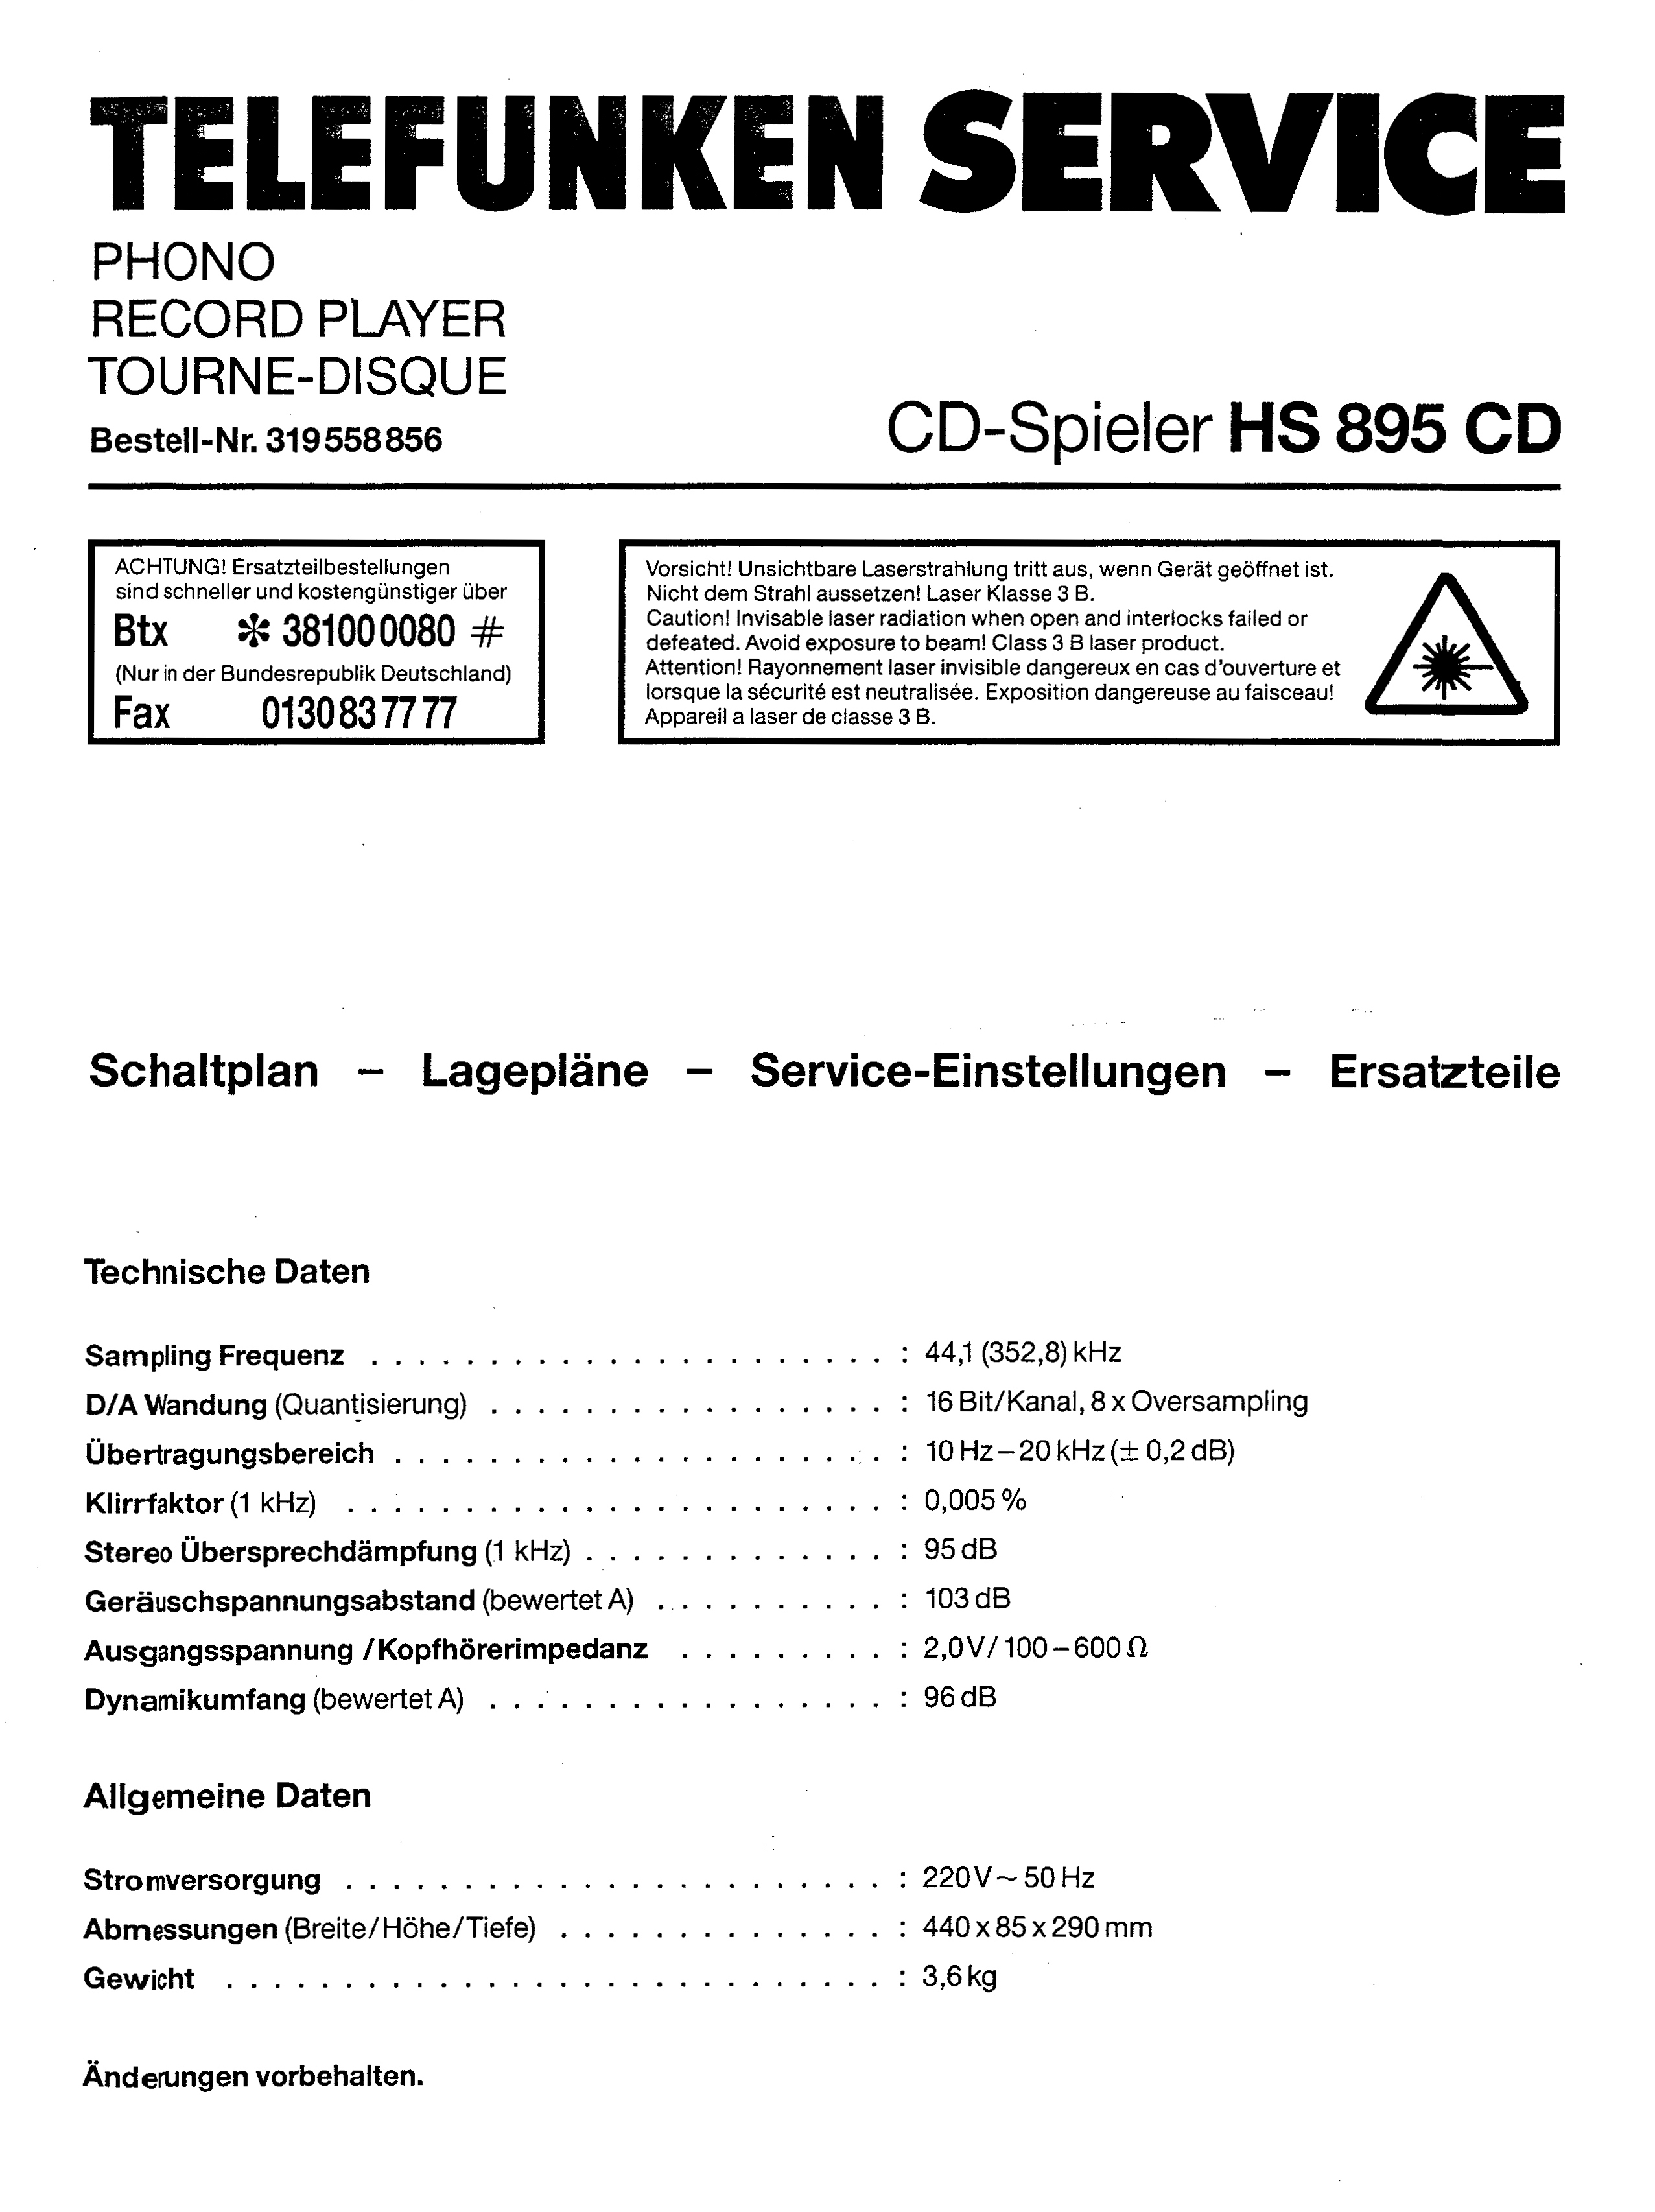 Telefunken HS-895 CD-Daten-1991.jpg